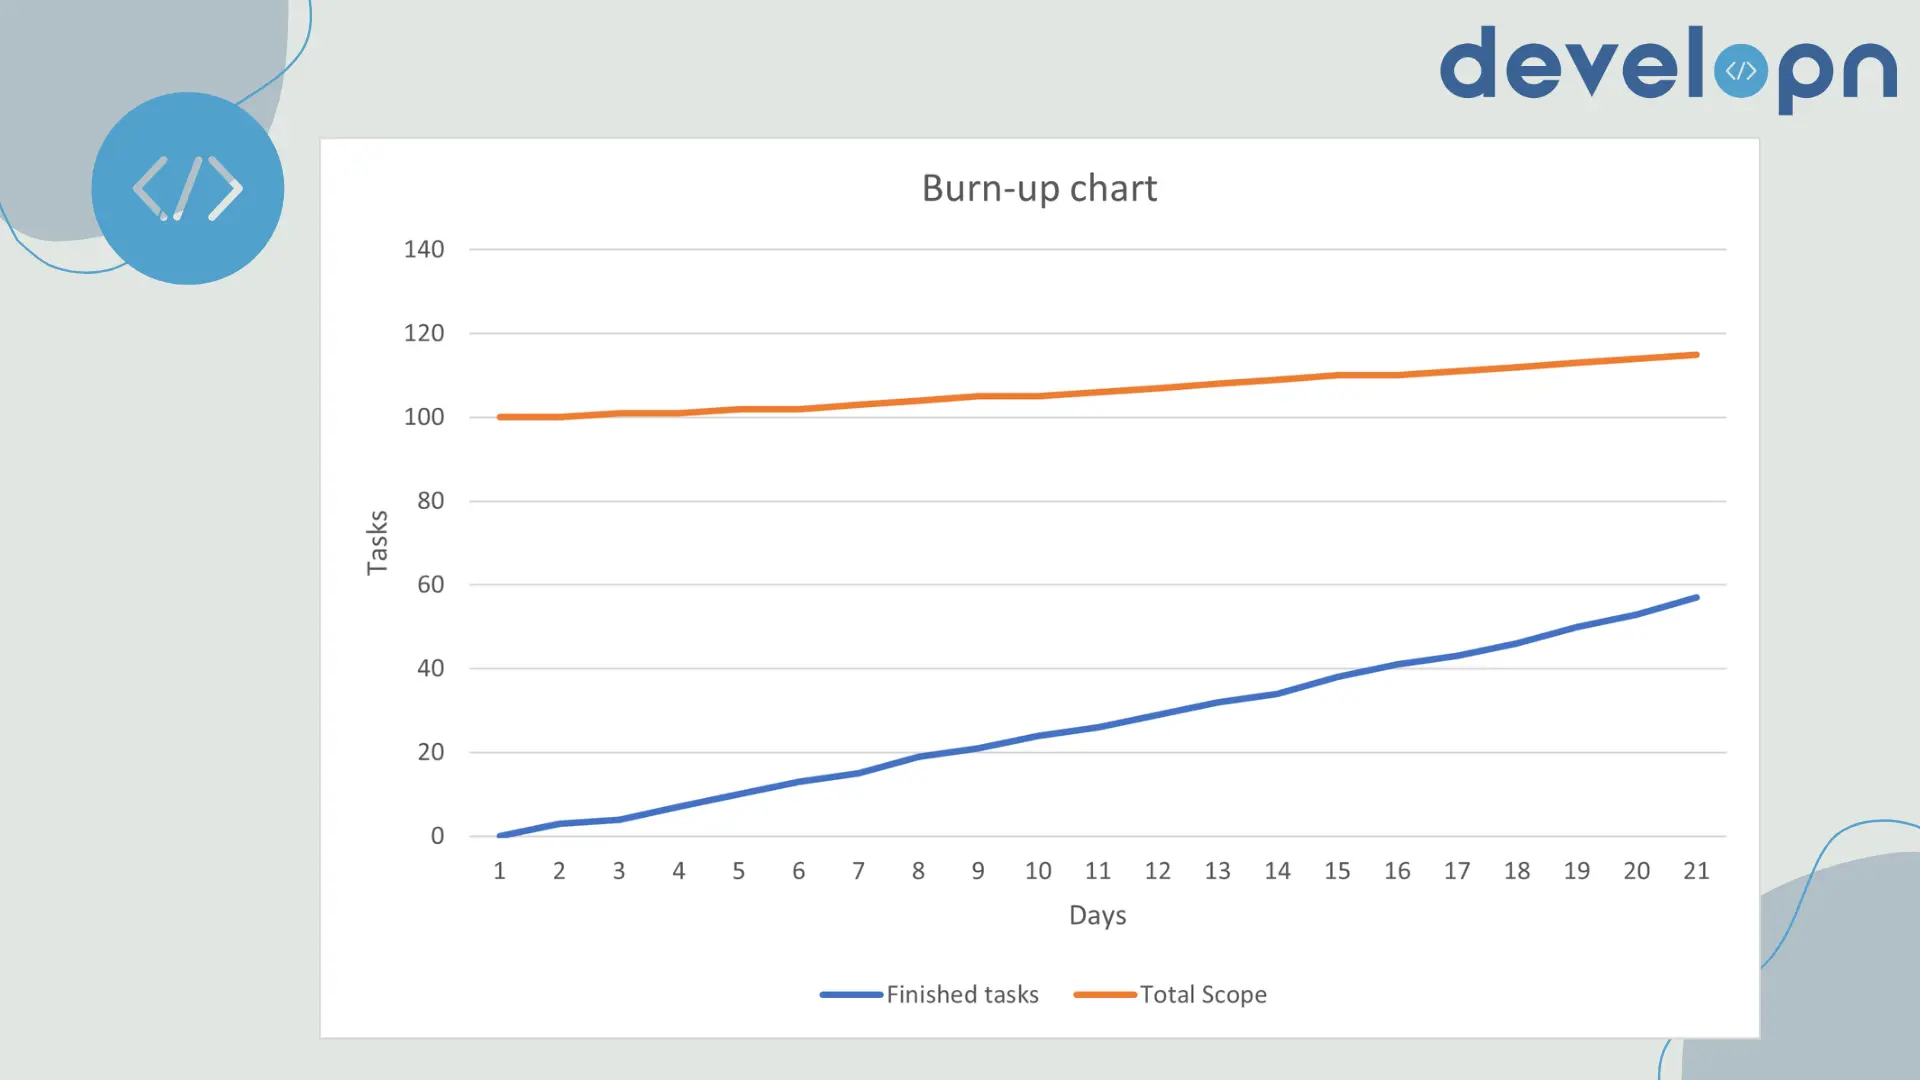 Burn-up chart